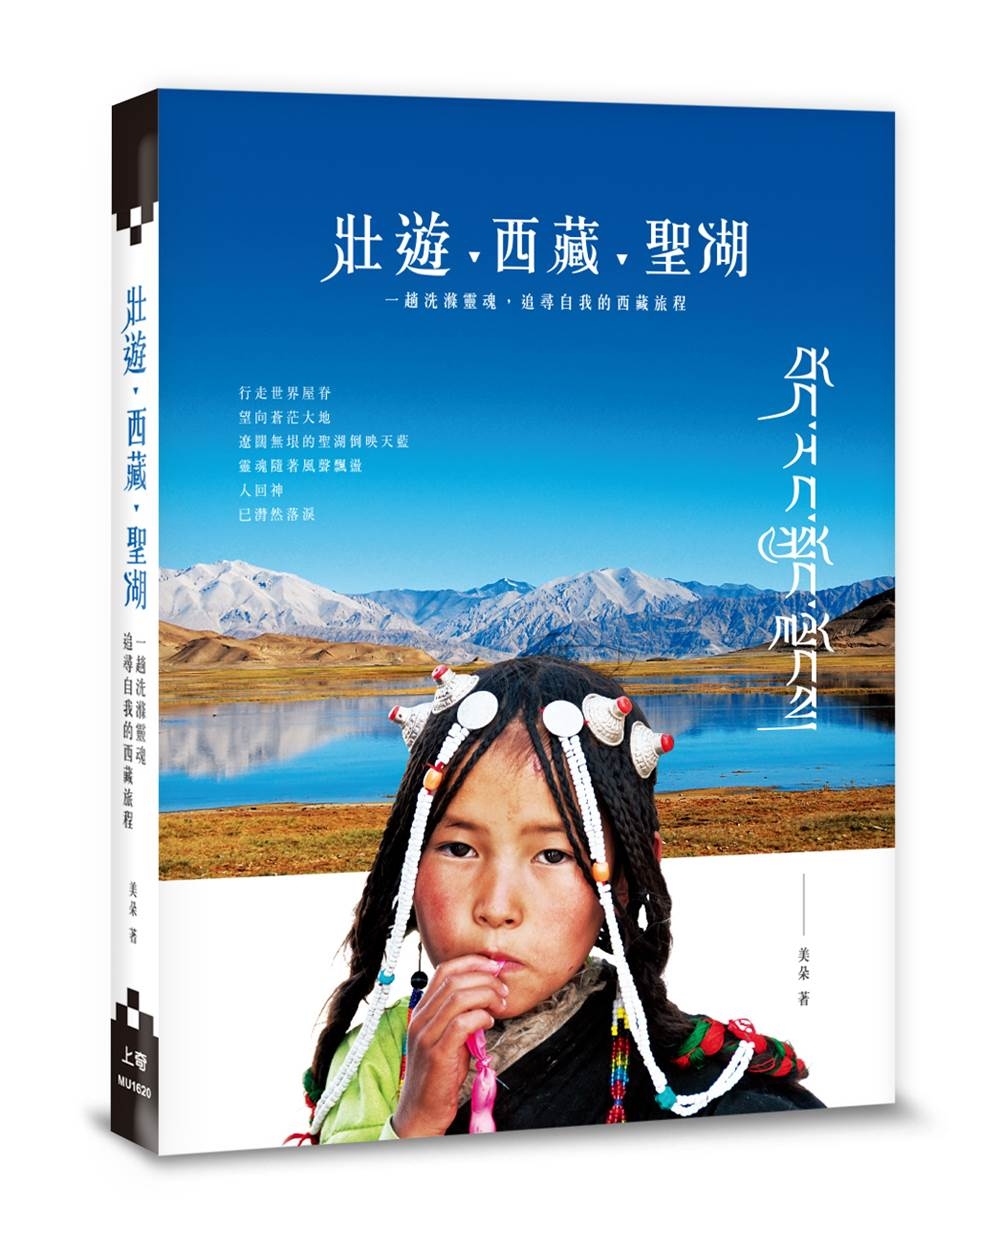 壯遊‧西藏‧聖湖：一趟洗滌靈魂，追尋自我的西藏旅程